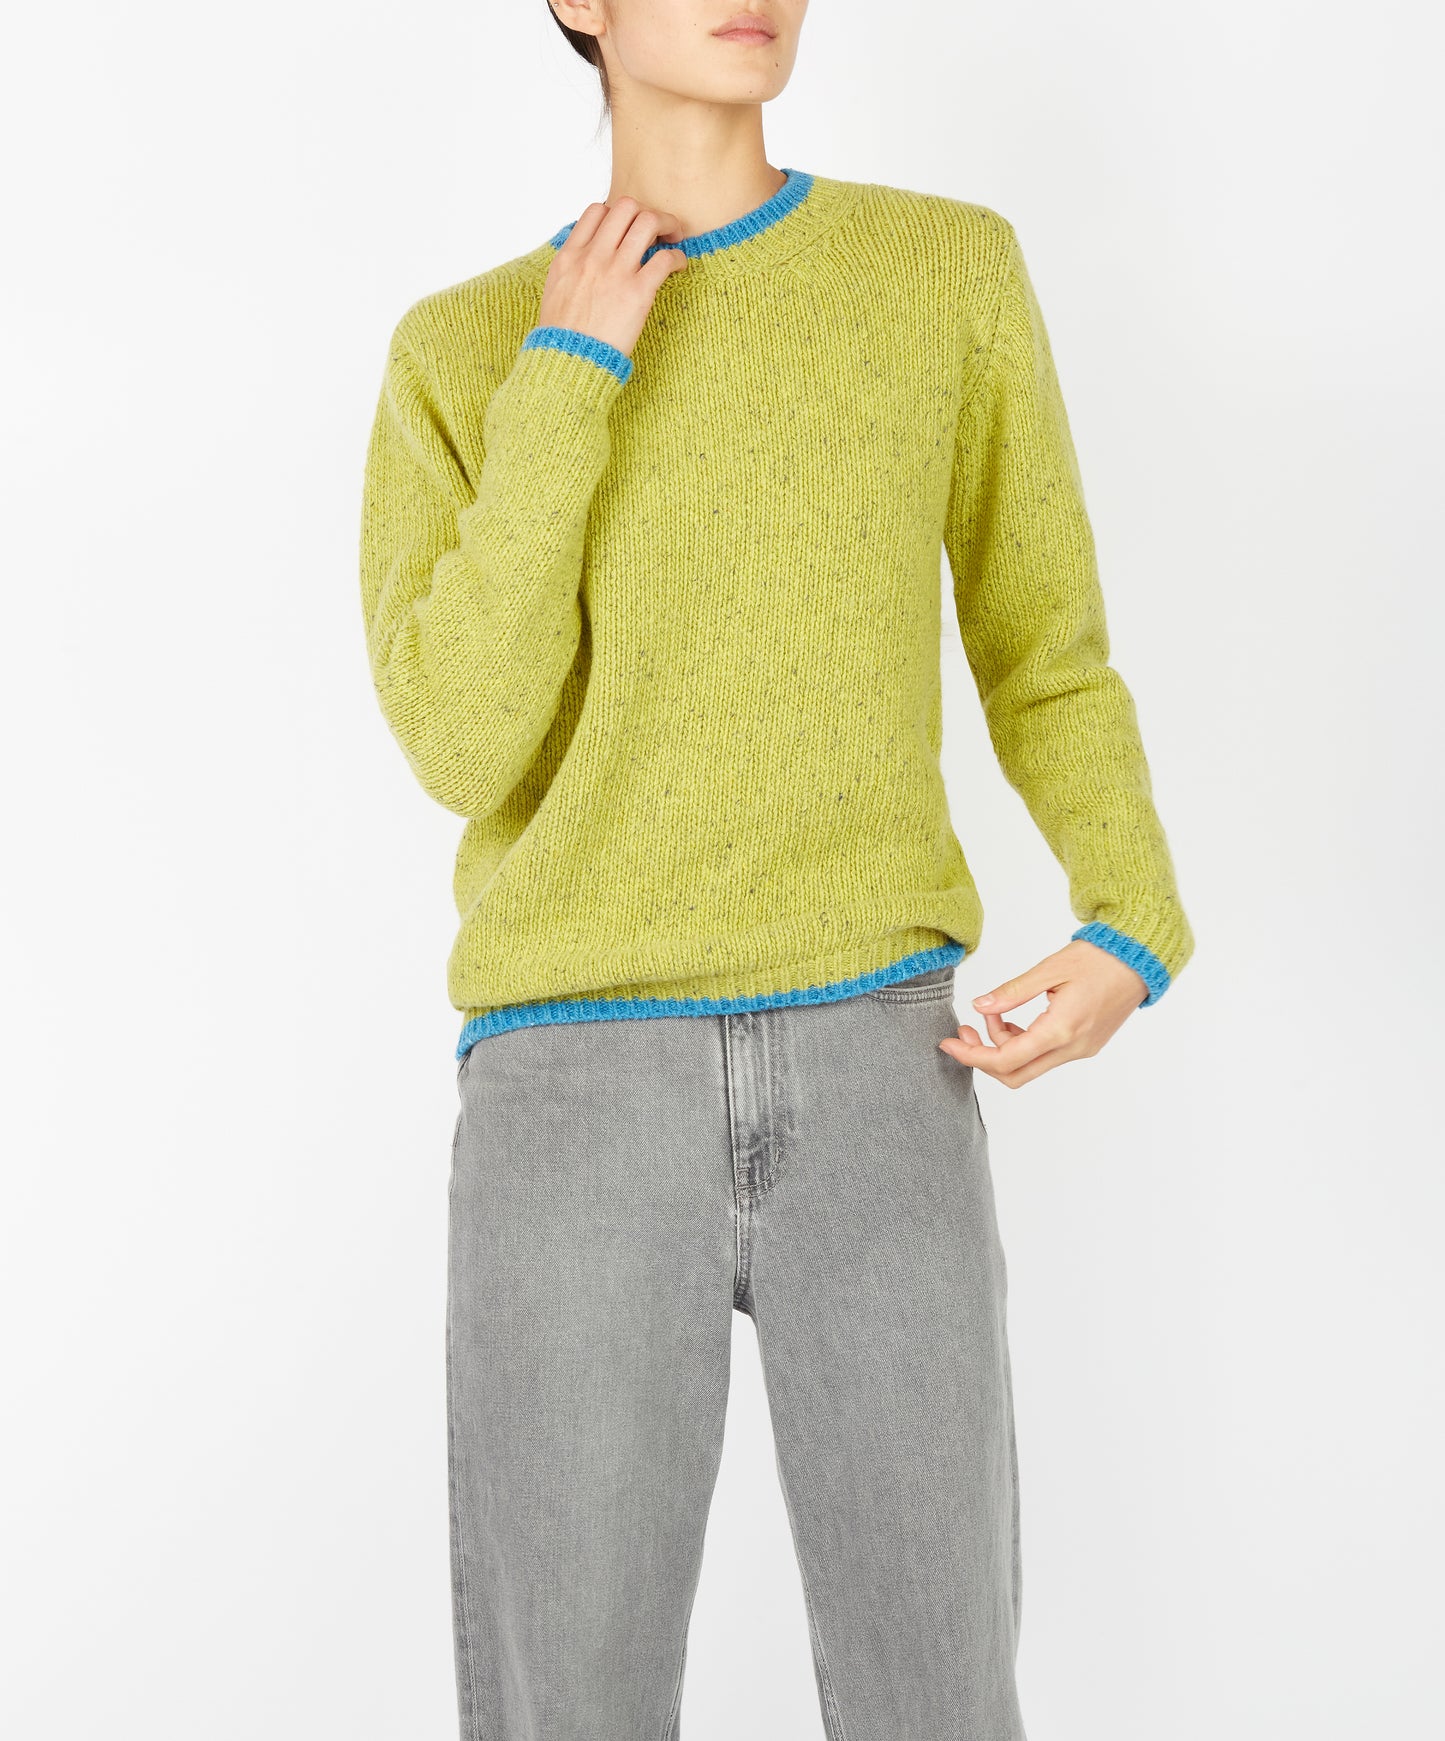 IrelandsEye Knitwear Slaney Crew Neck Sweater Chartreuse